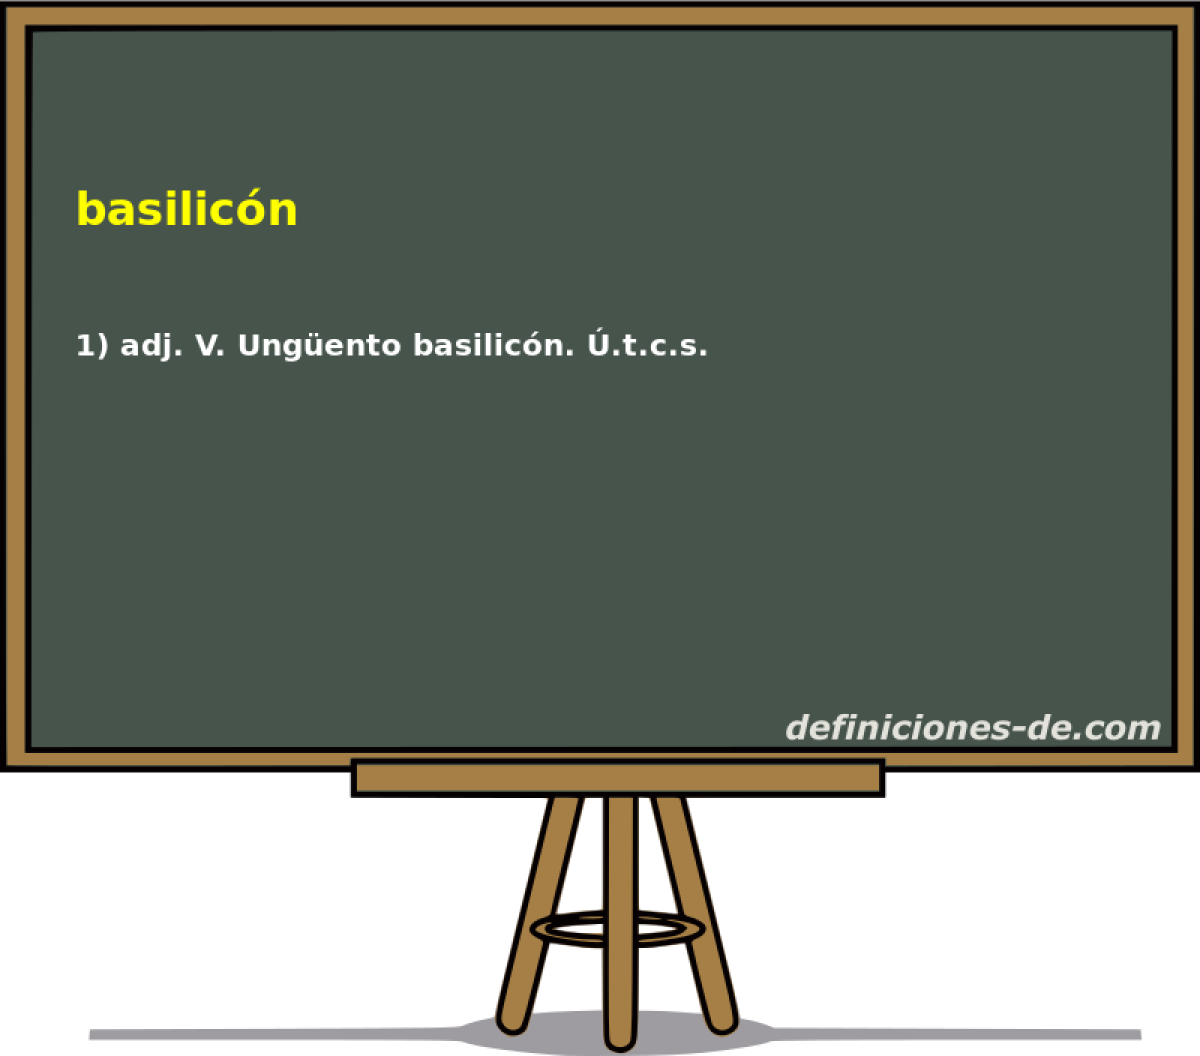 basilicn 